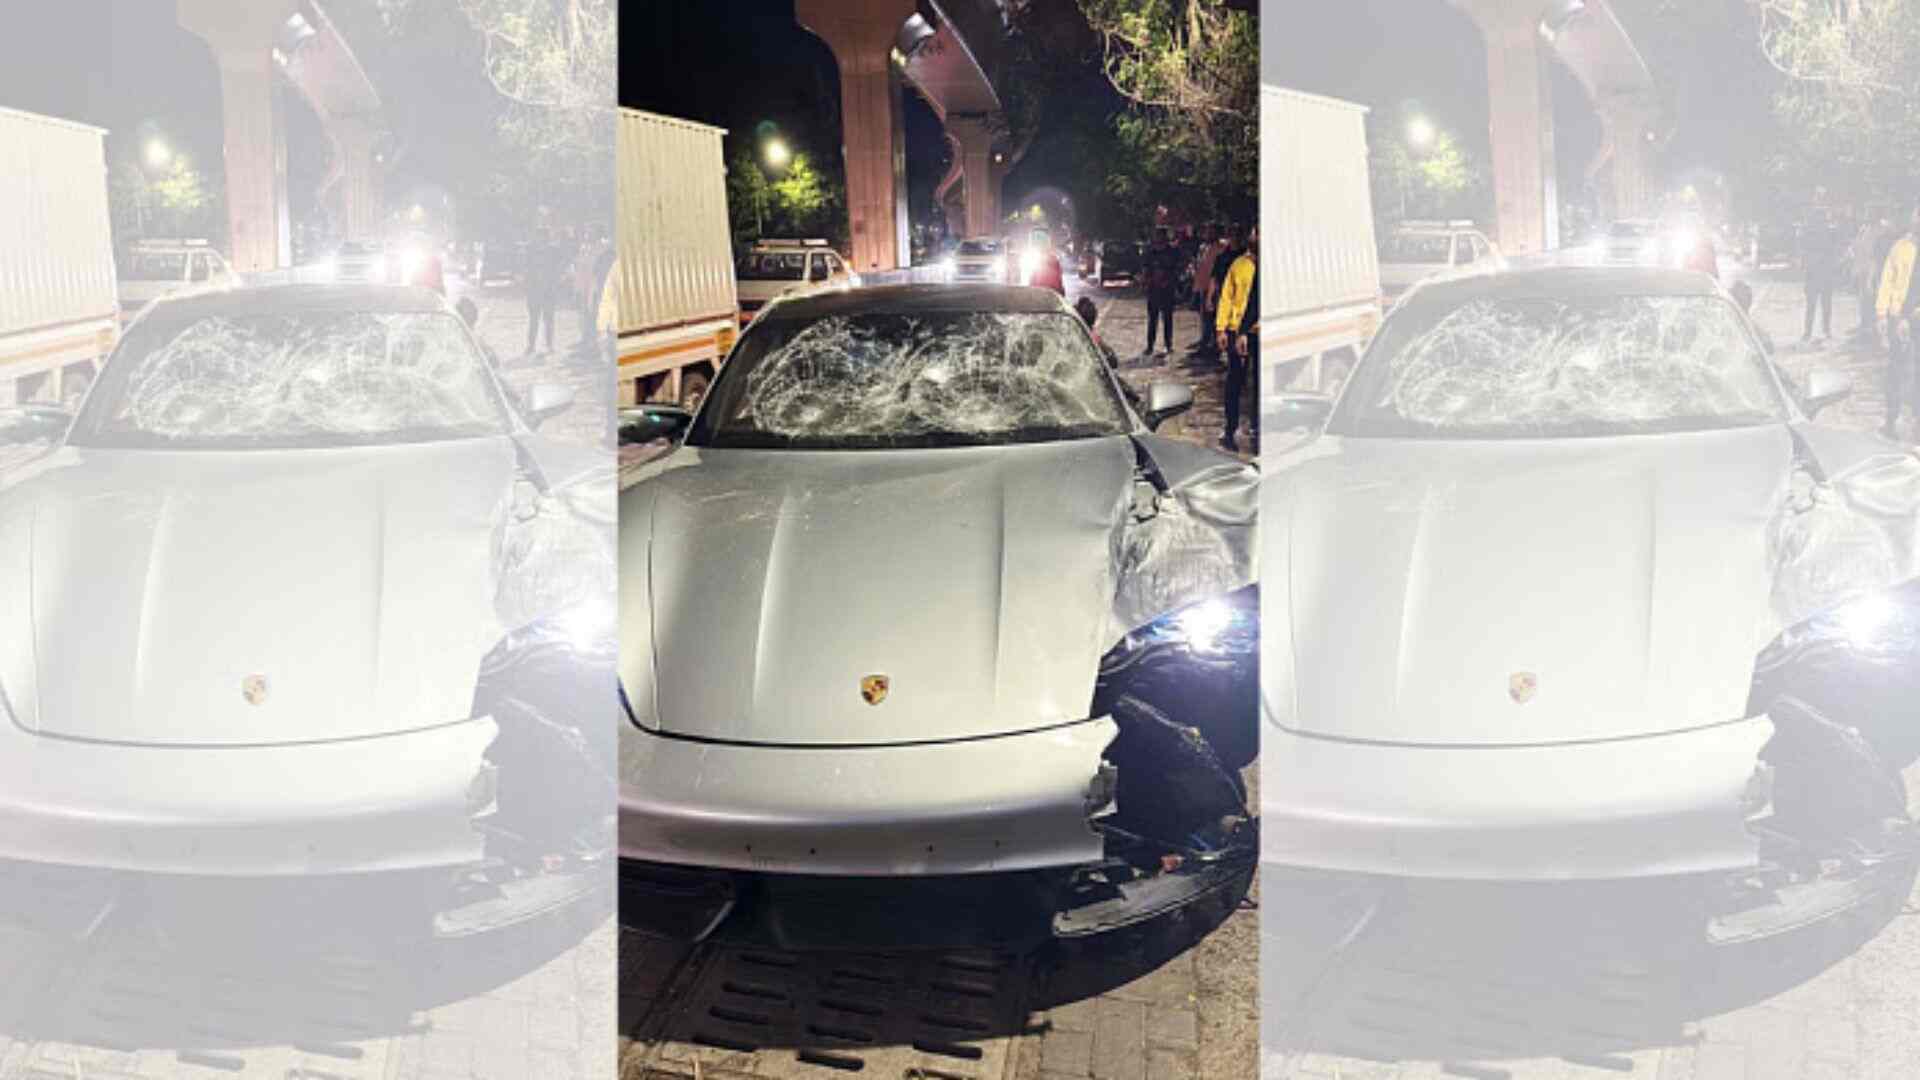 Pune Porsche Crash: Minor’s Father Held in Custody Until May 24